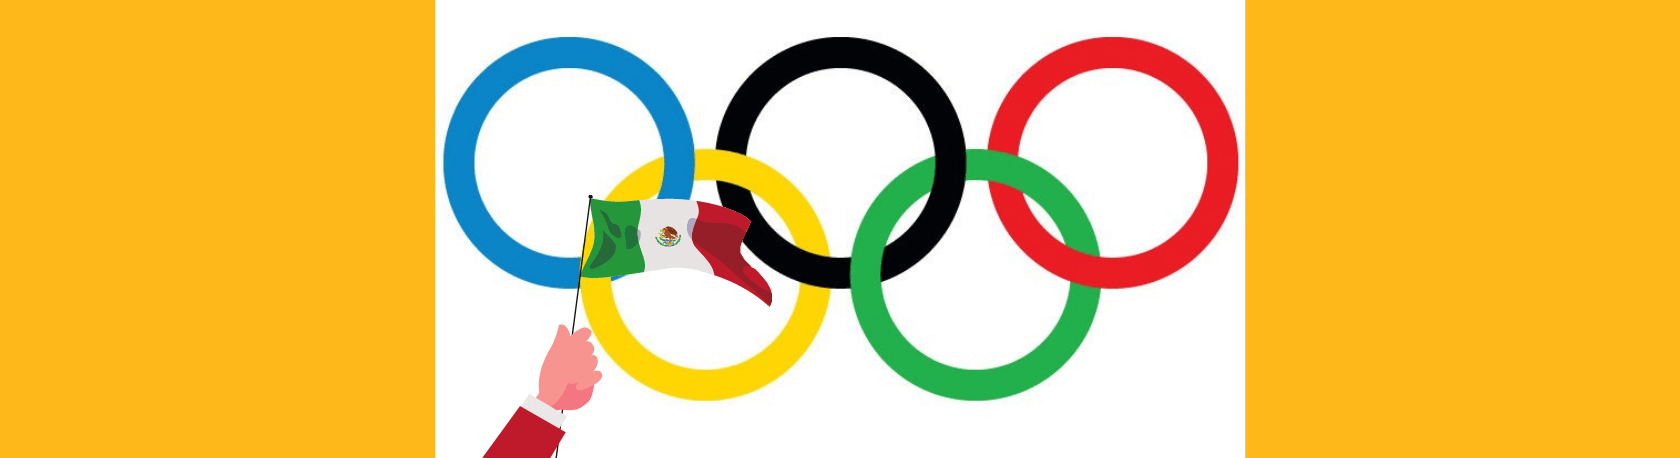 ¿Sabías que sólo dos países hispano hablantes han sido anfitriones de los Juegos Olímpicos de verano? - Easy Español